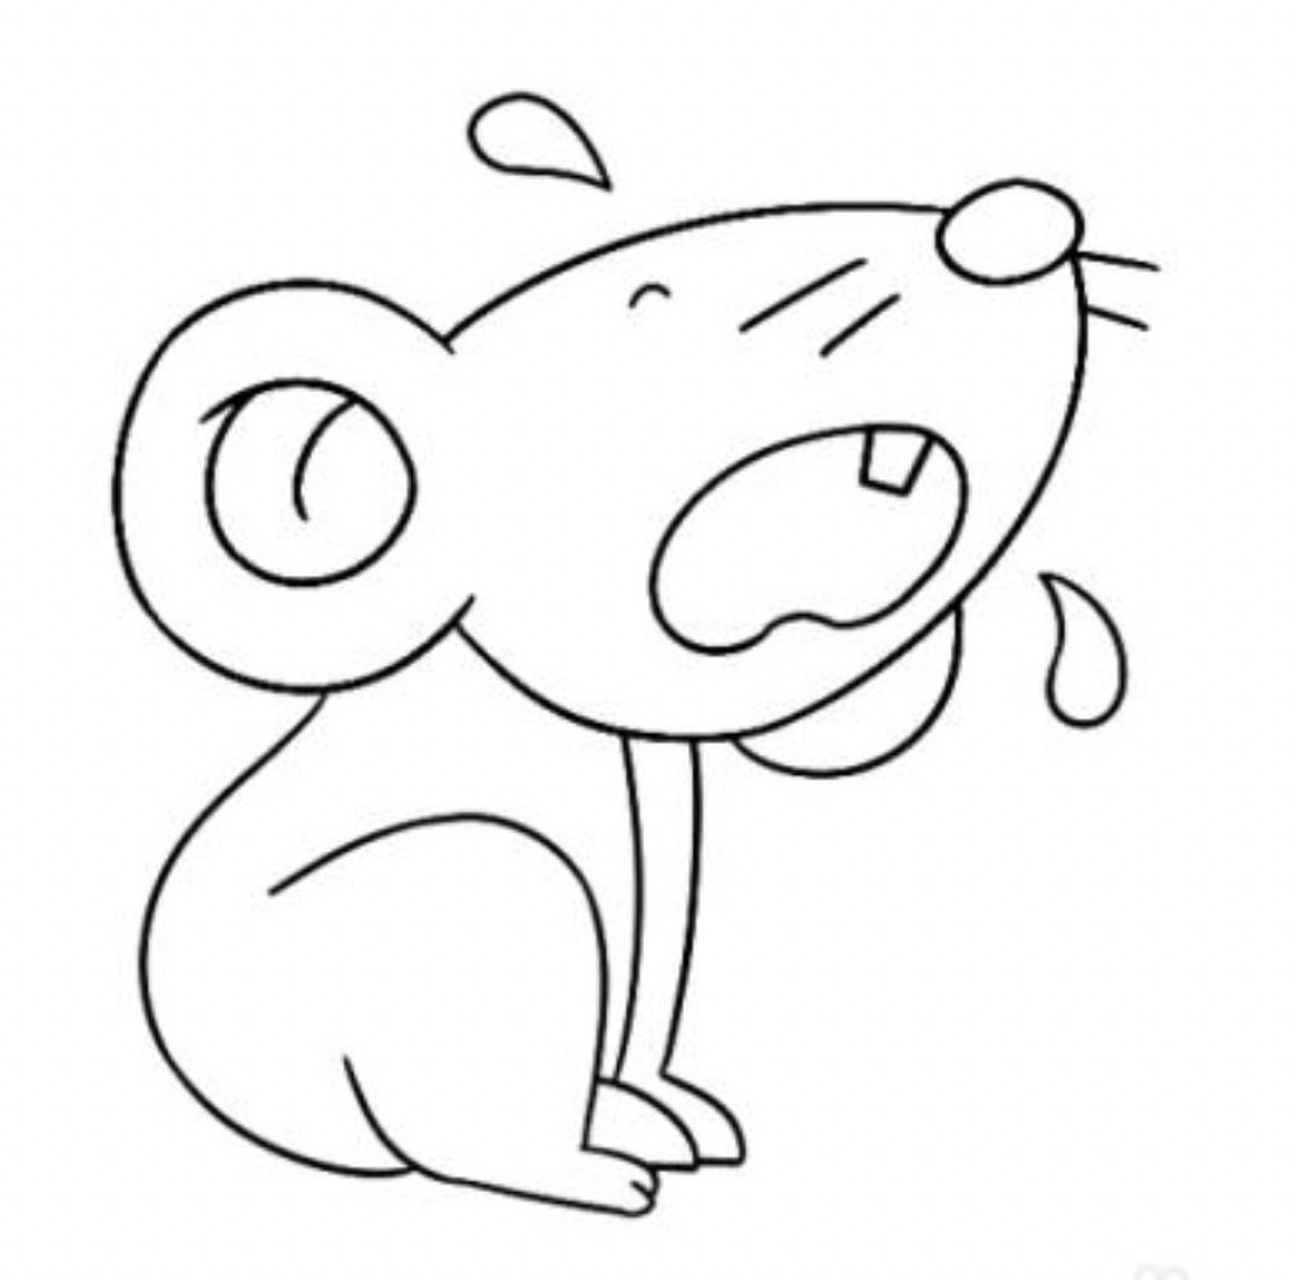 画老鼠简笔画 简单图片